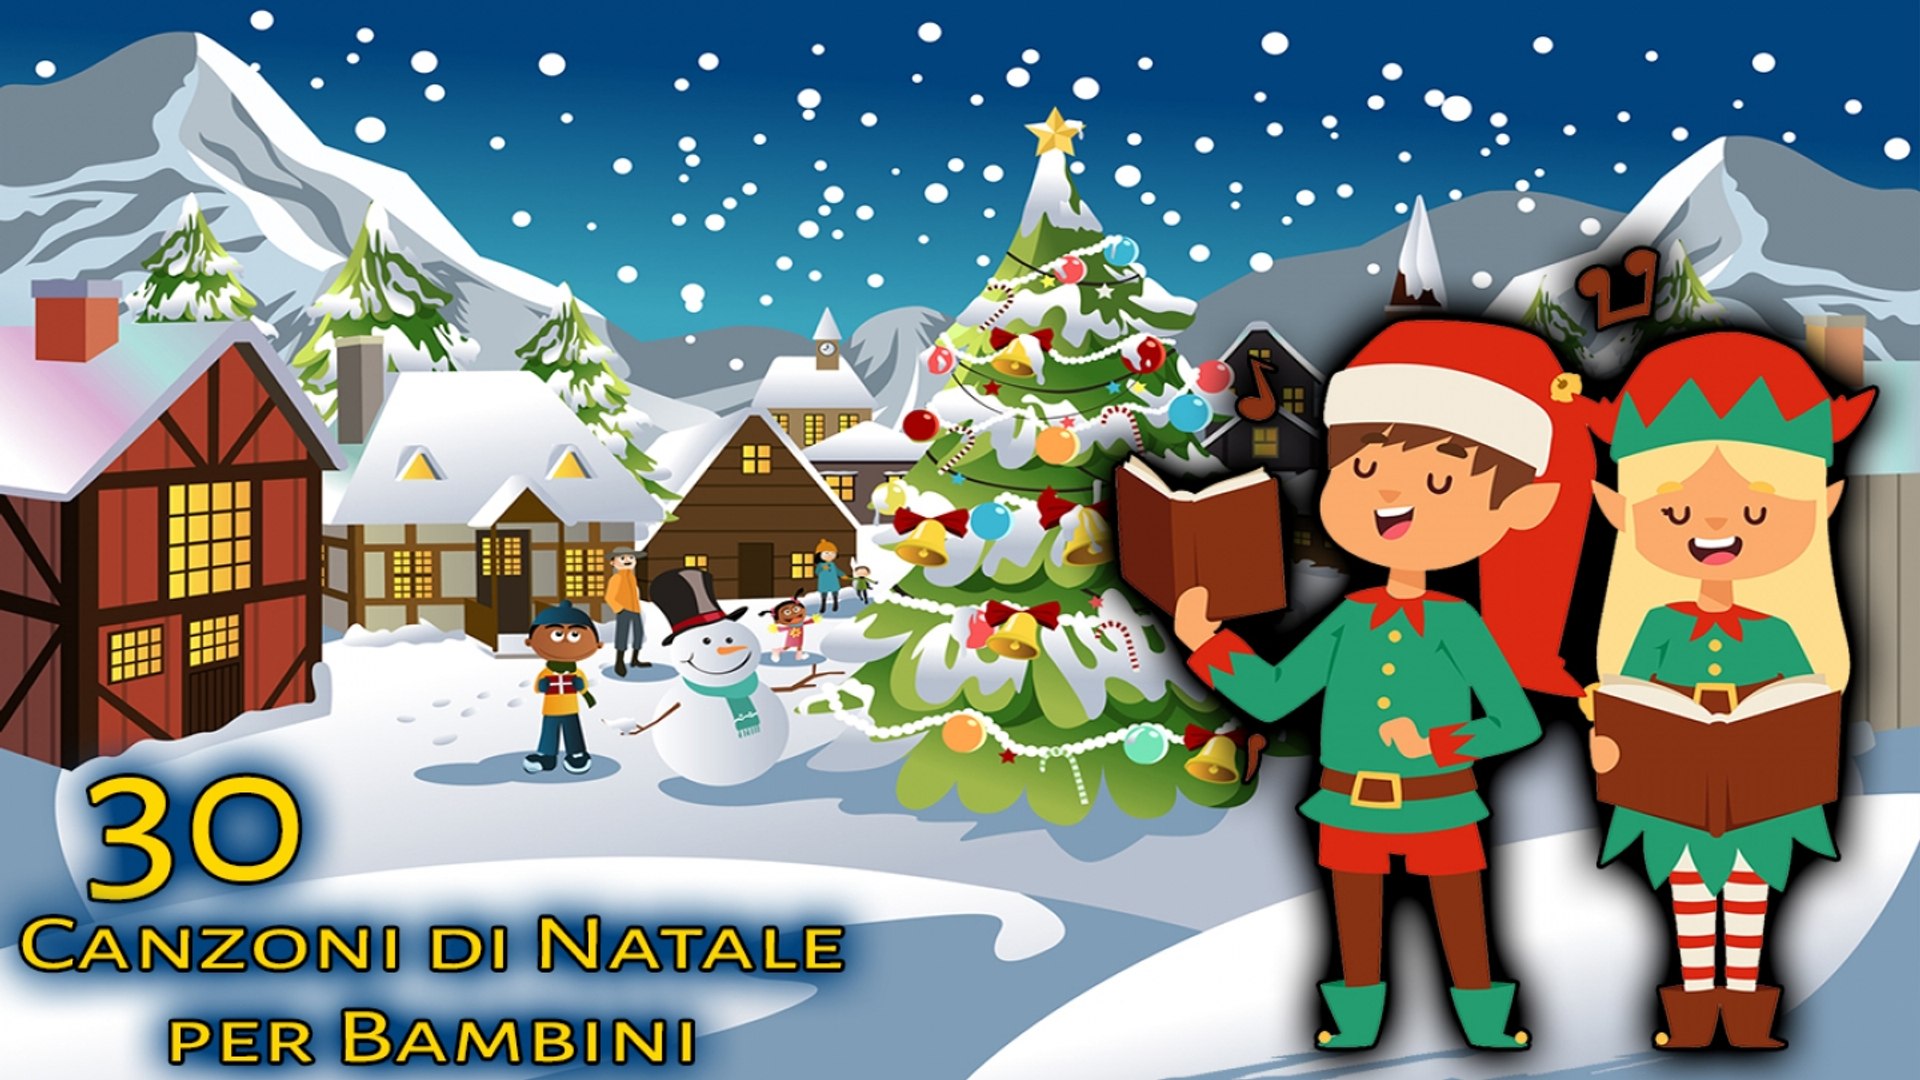 Canzoni Natale.Va Top 30 Canzoni Di Natale Per Bambini Canzoni Per Bambini Video Dailymotion